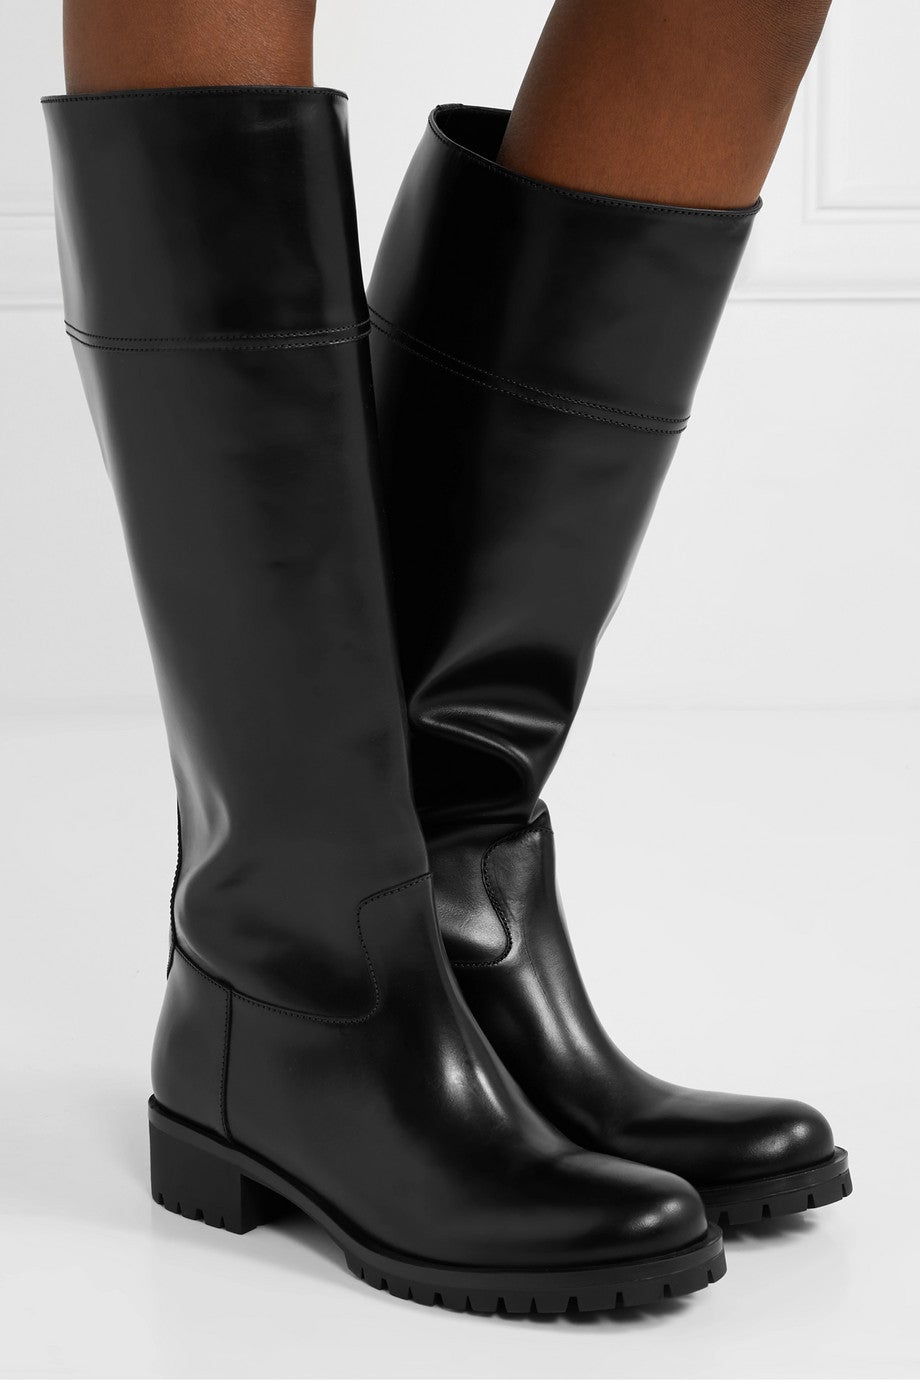 Statement Strides: Prada 40 Leather Knee Boots